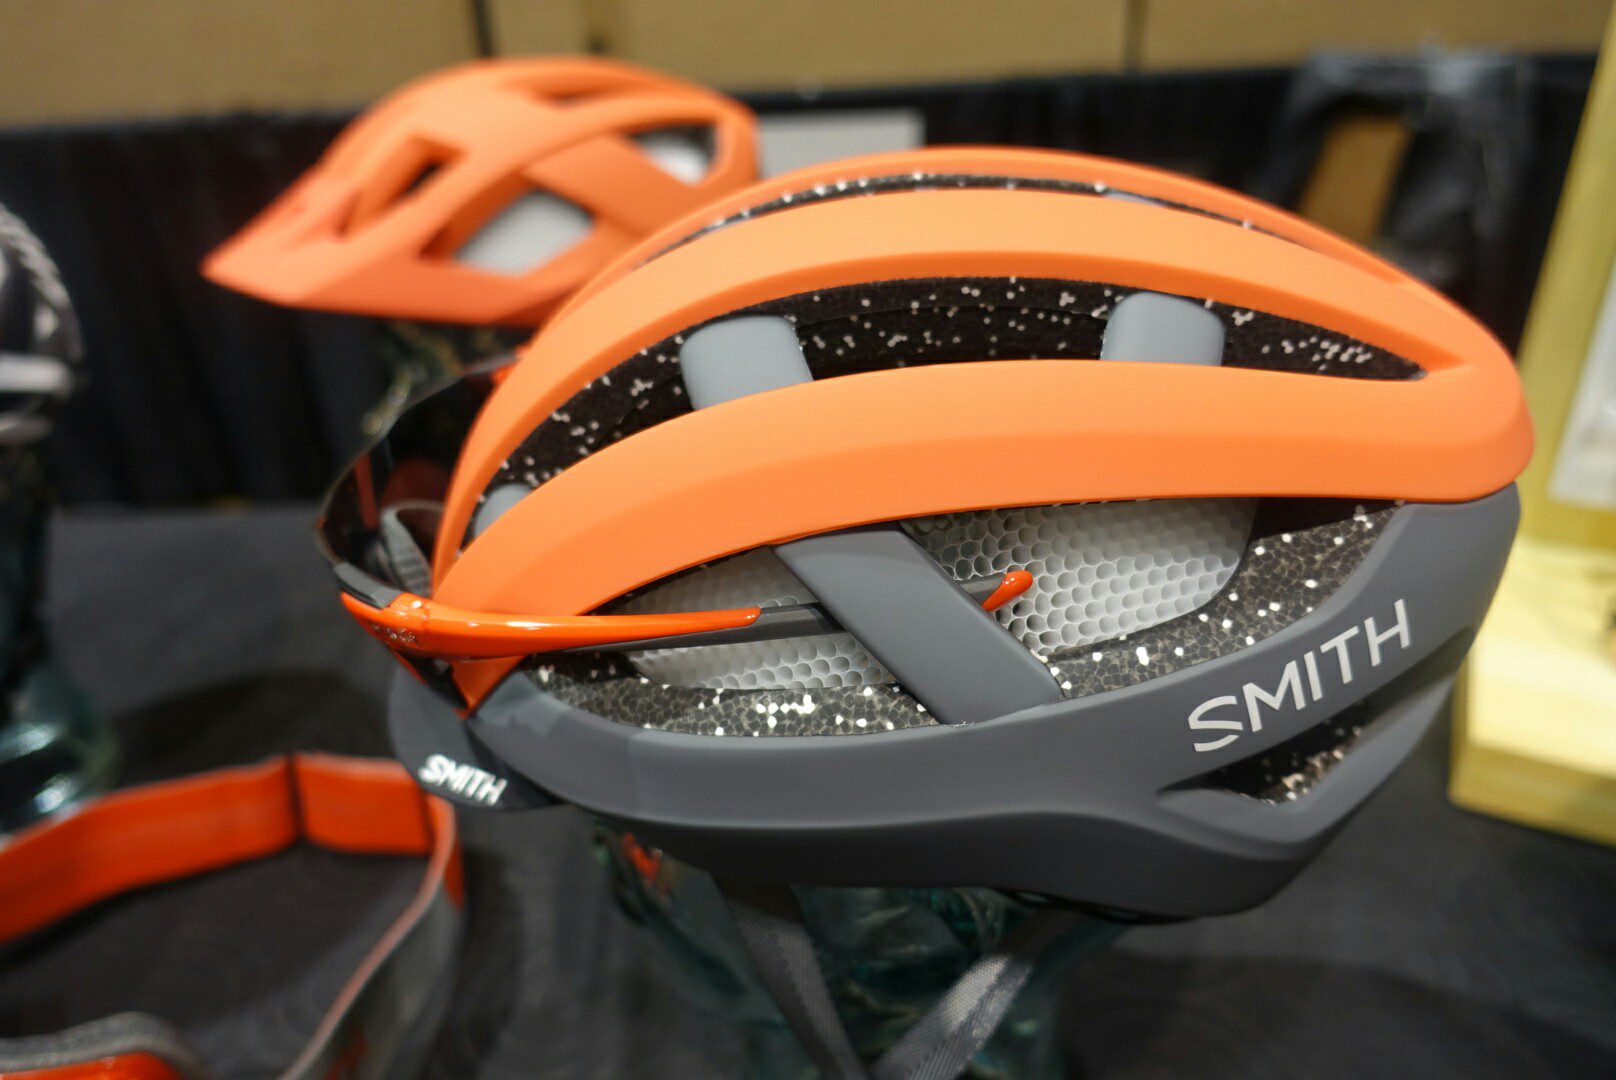 Smith Network helmet